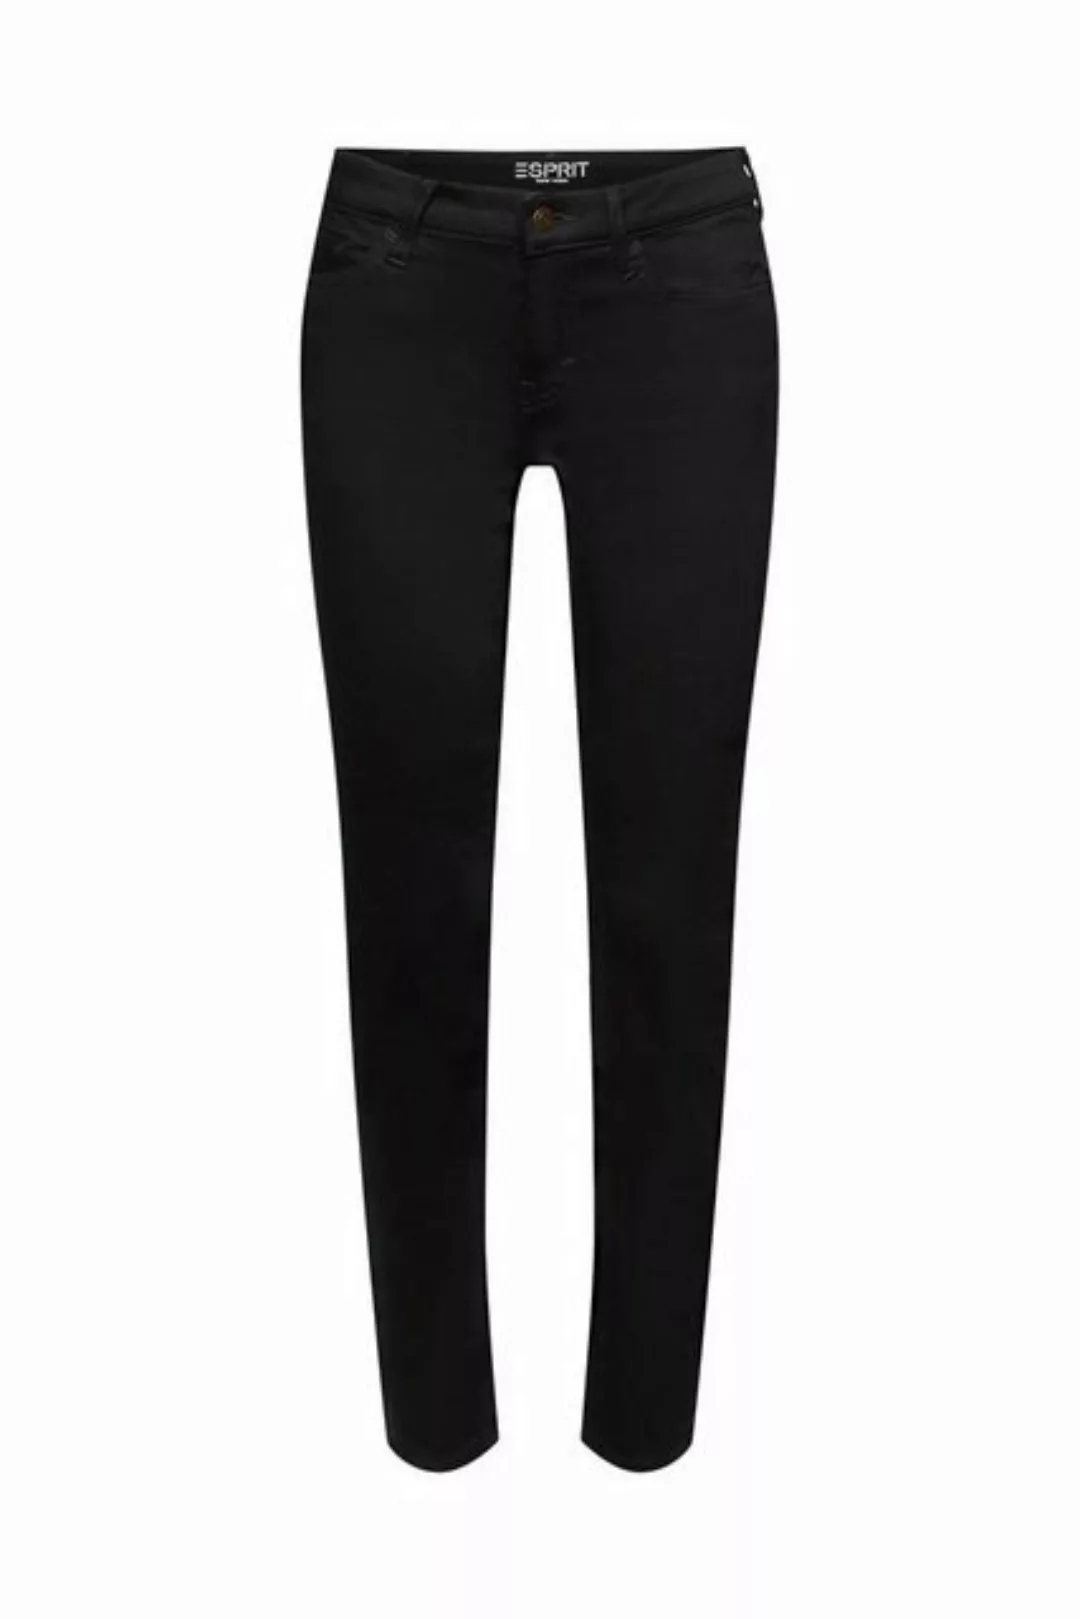 Esprit Damen Jeans 993ee1b381 günstig online kaufen